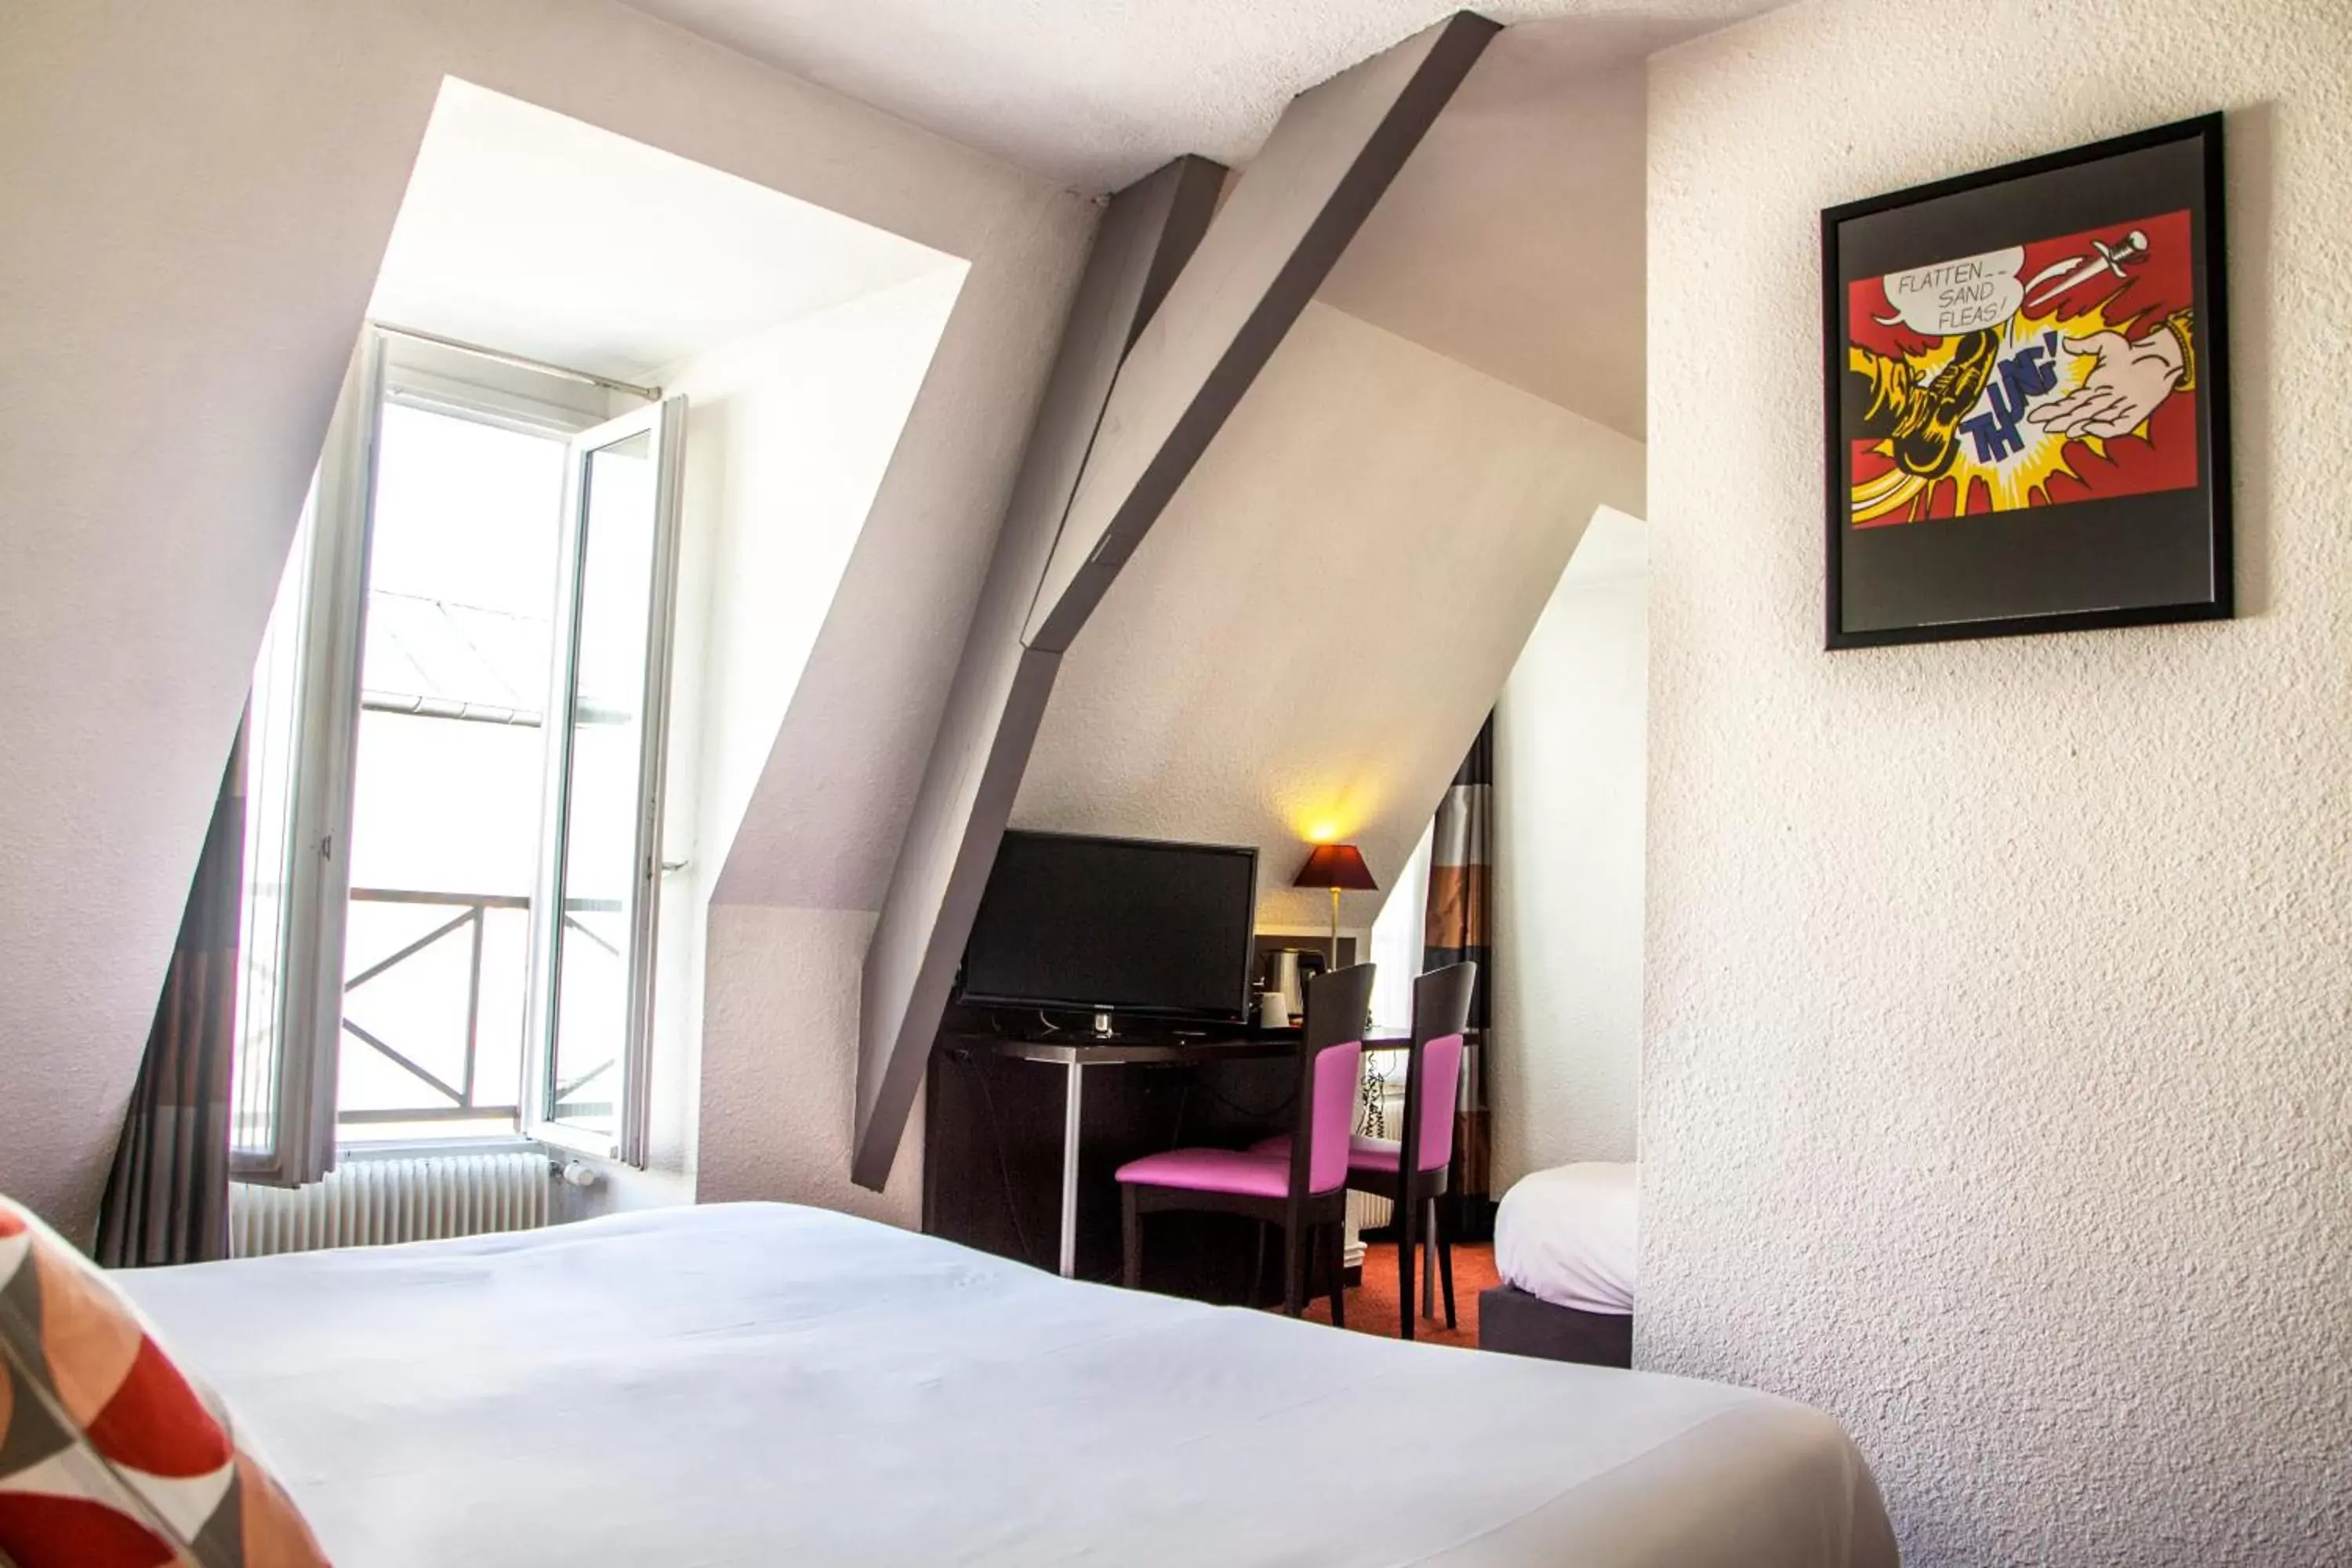 Bedroom, TV/Entertainment Center in 55 Hôtel Montparnasse